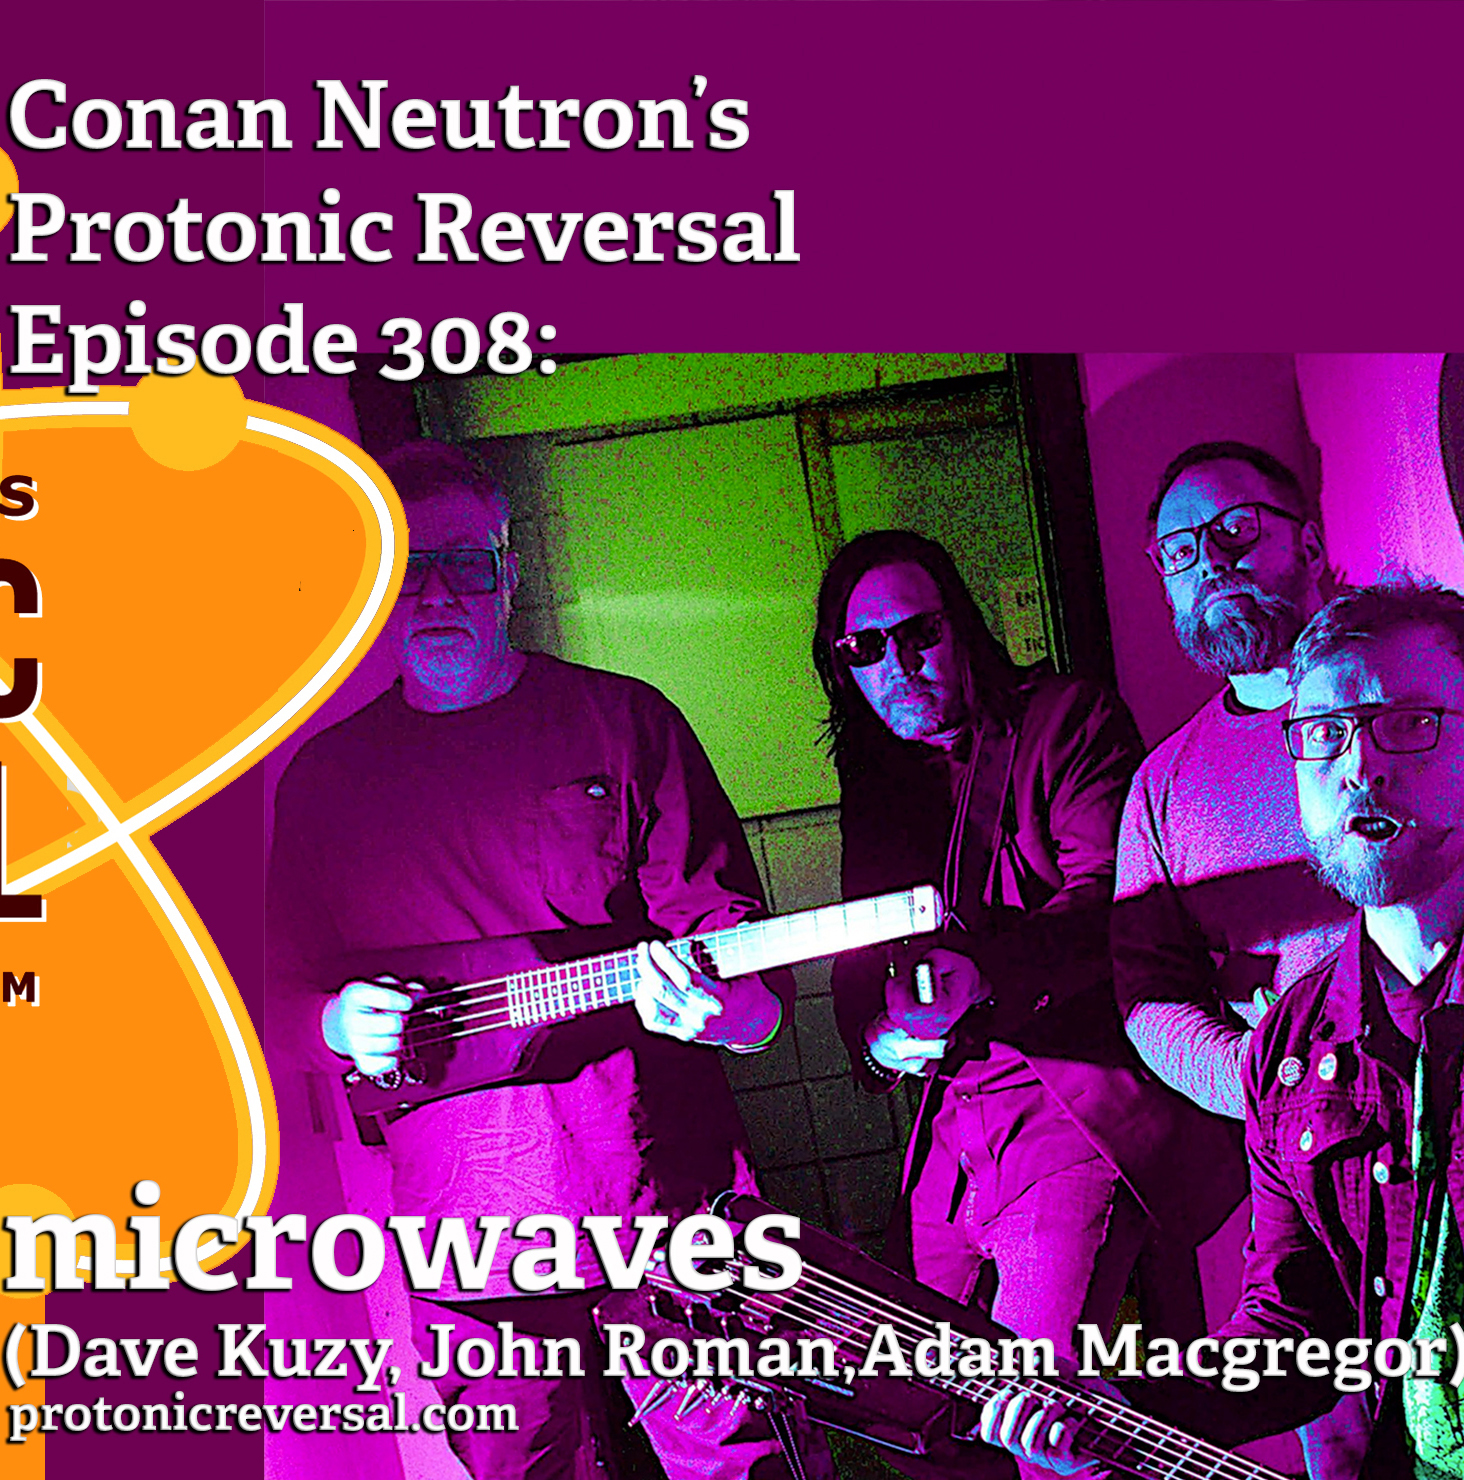 Ep308: microwaves (Dave Kuzy, John Roman,Adam Macgregor)